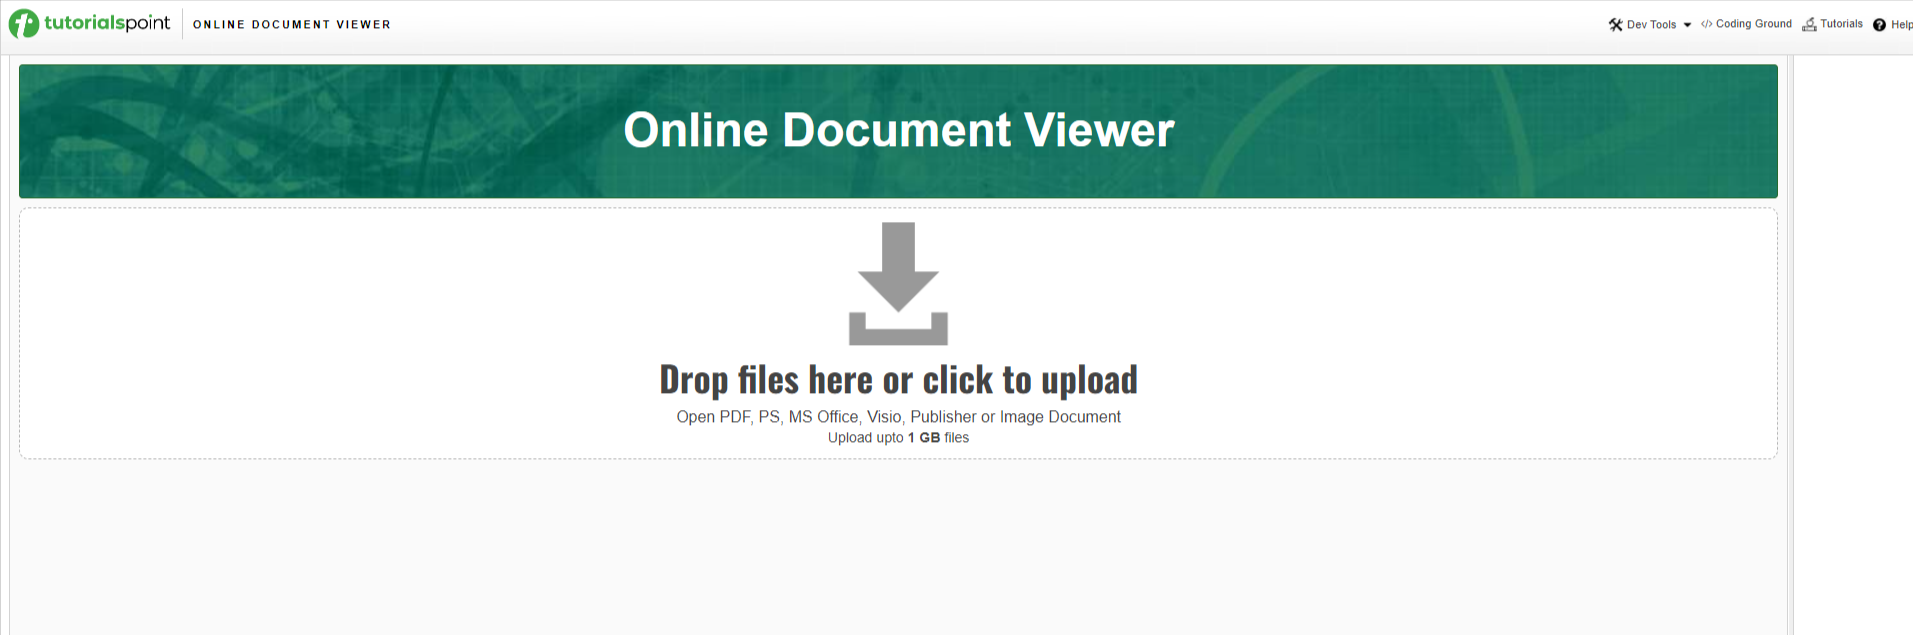 TutorialsPoint Online Document Viewer